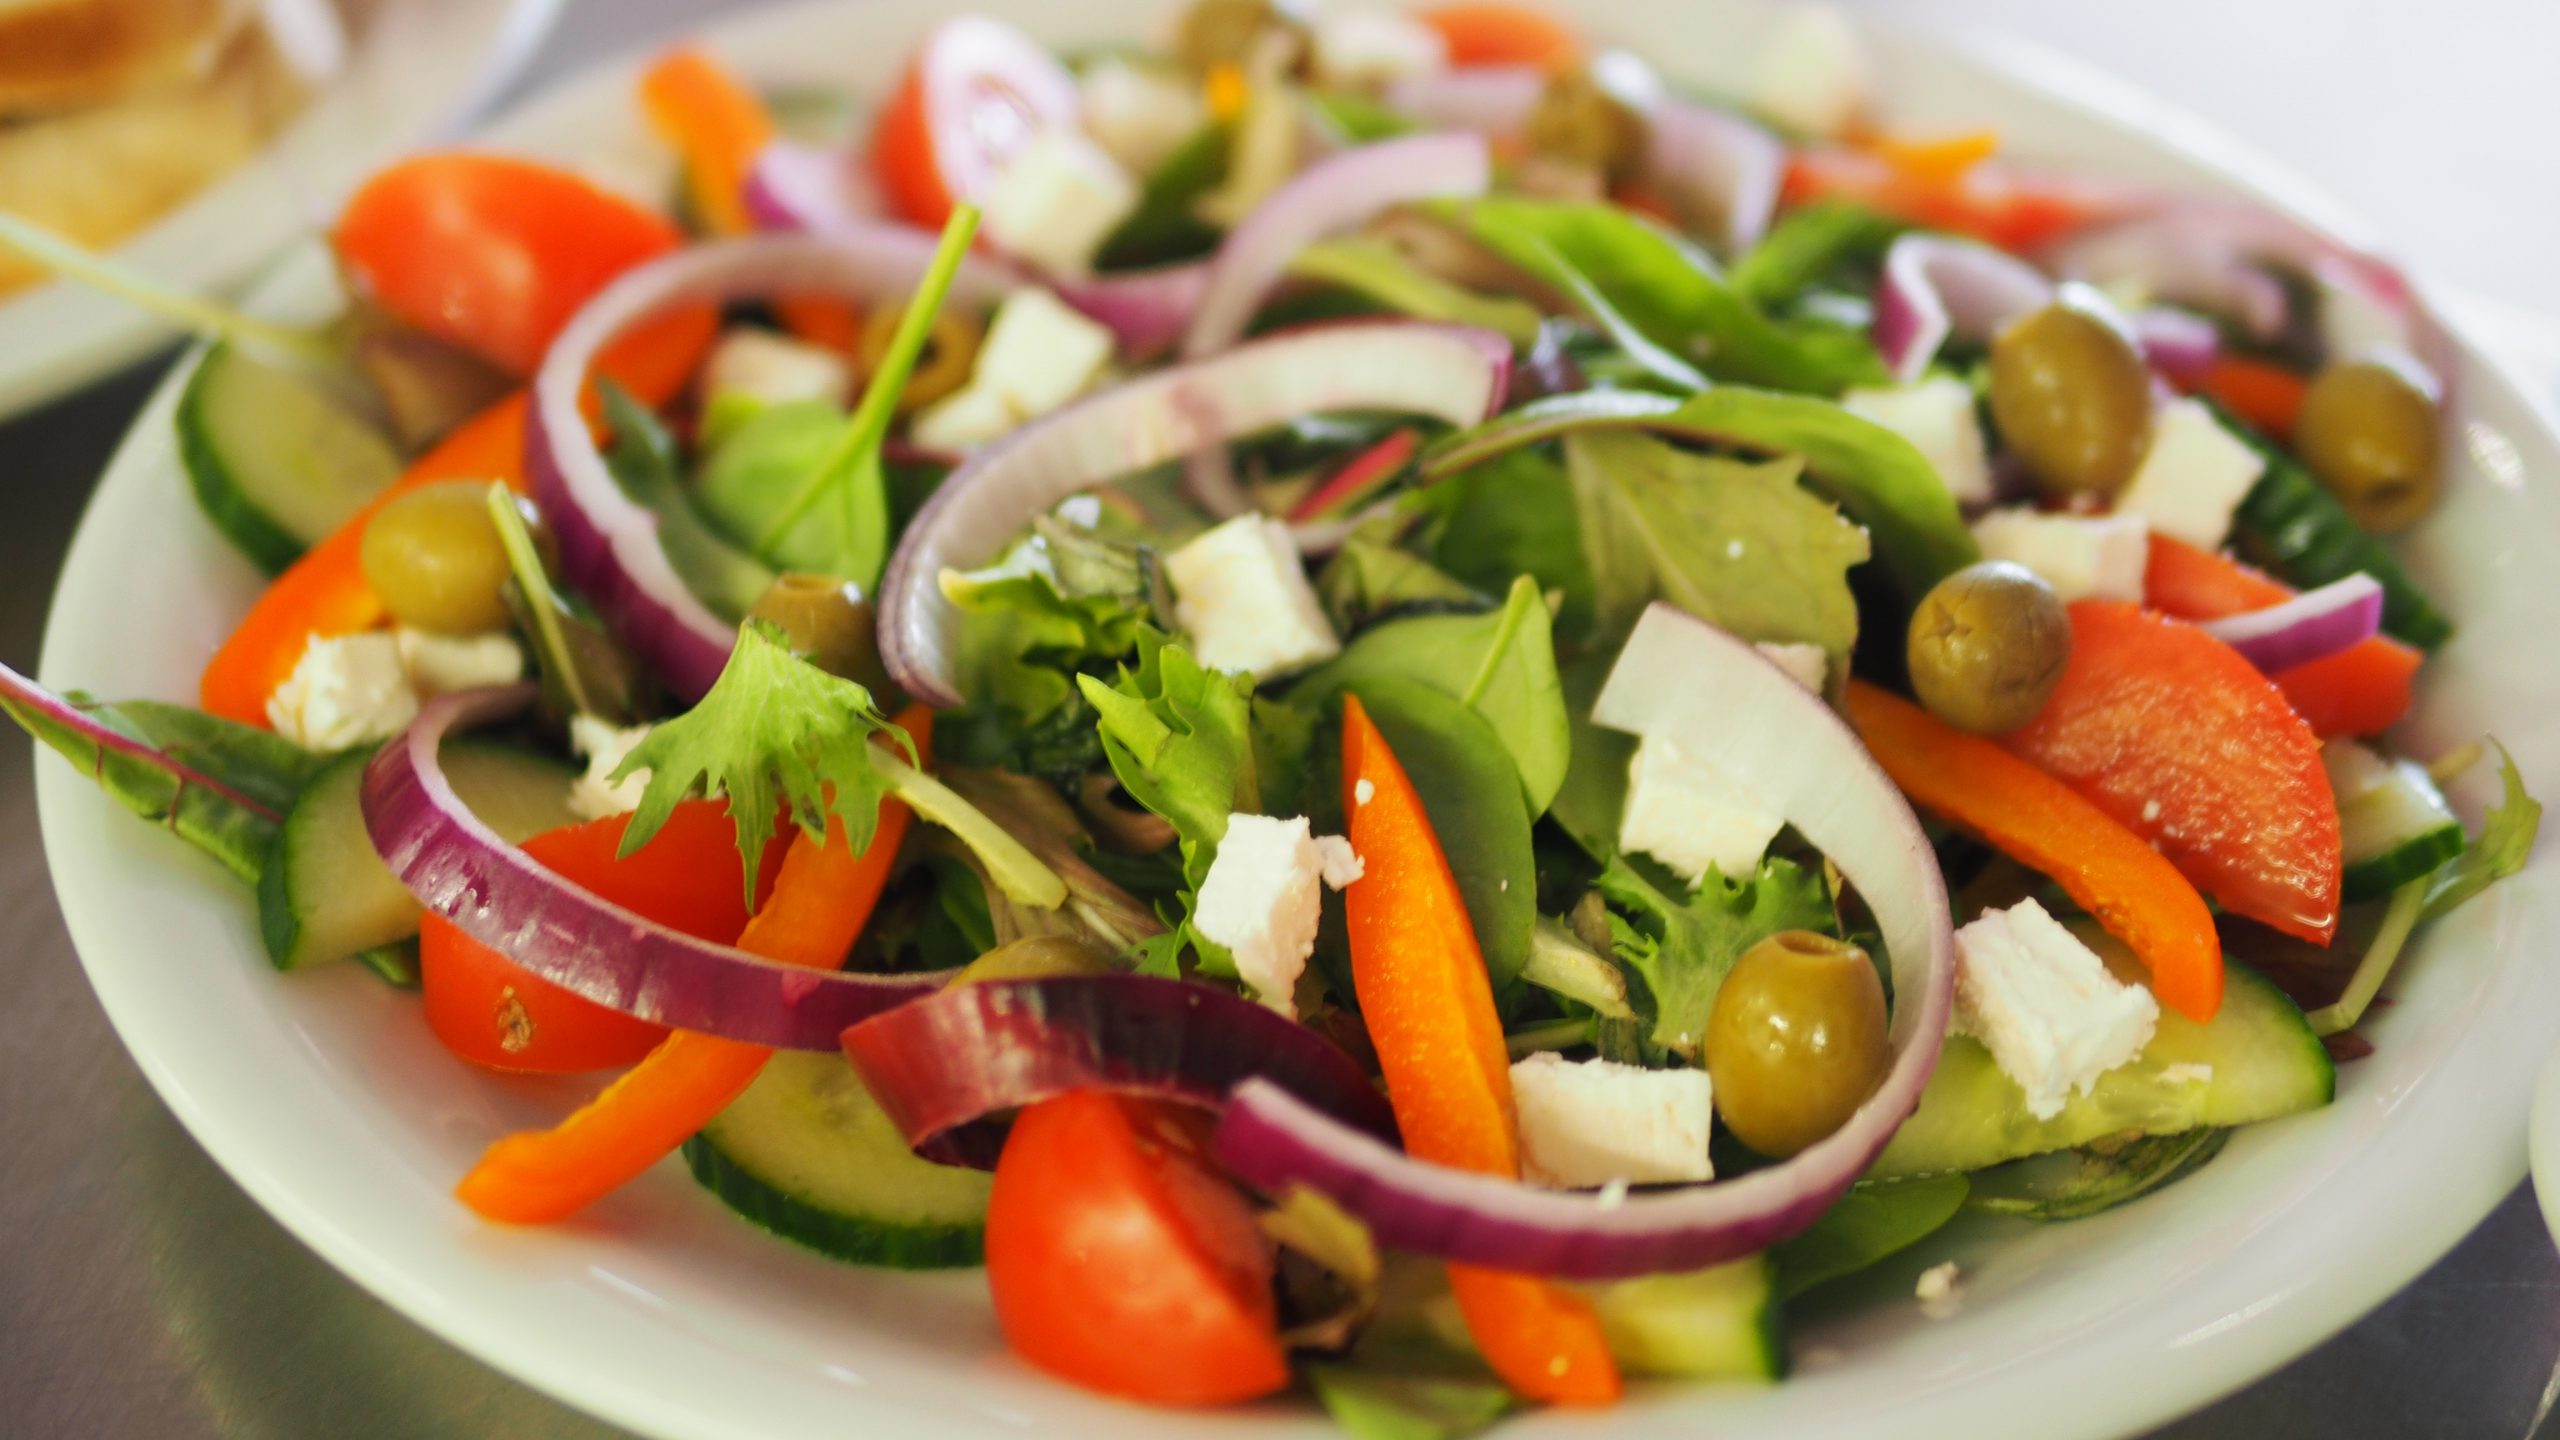 vegetable-salad-on-plate-1059905